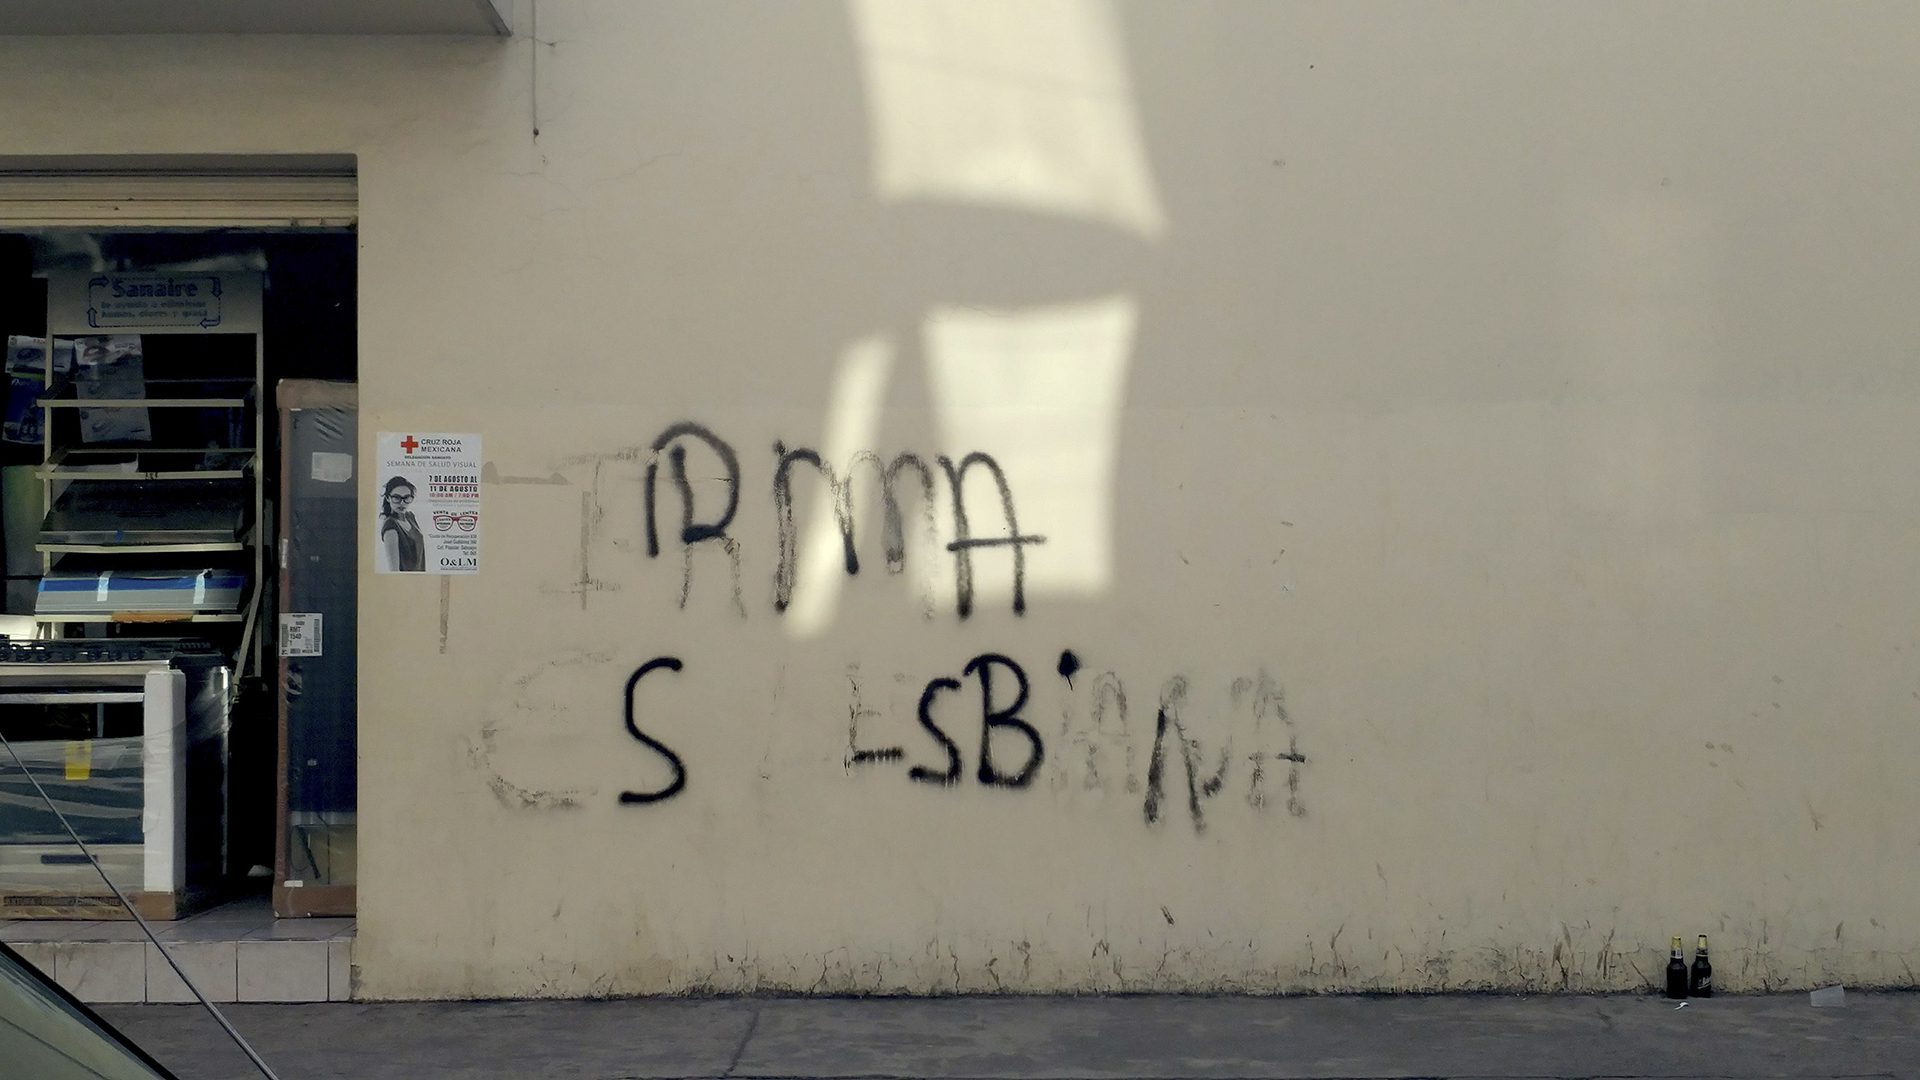 "Irma es lesbiana" written on a beige wall in black